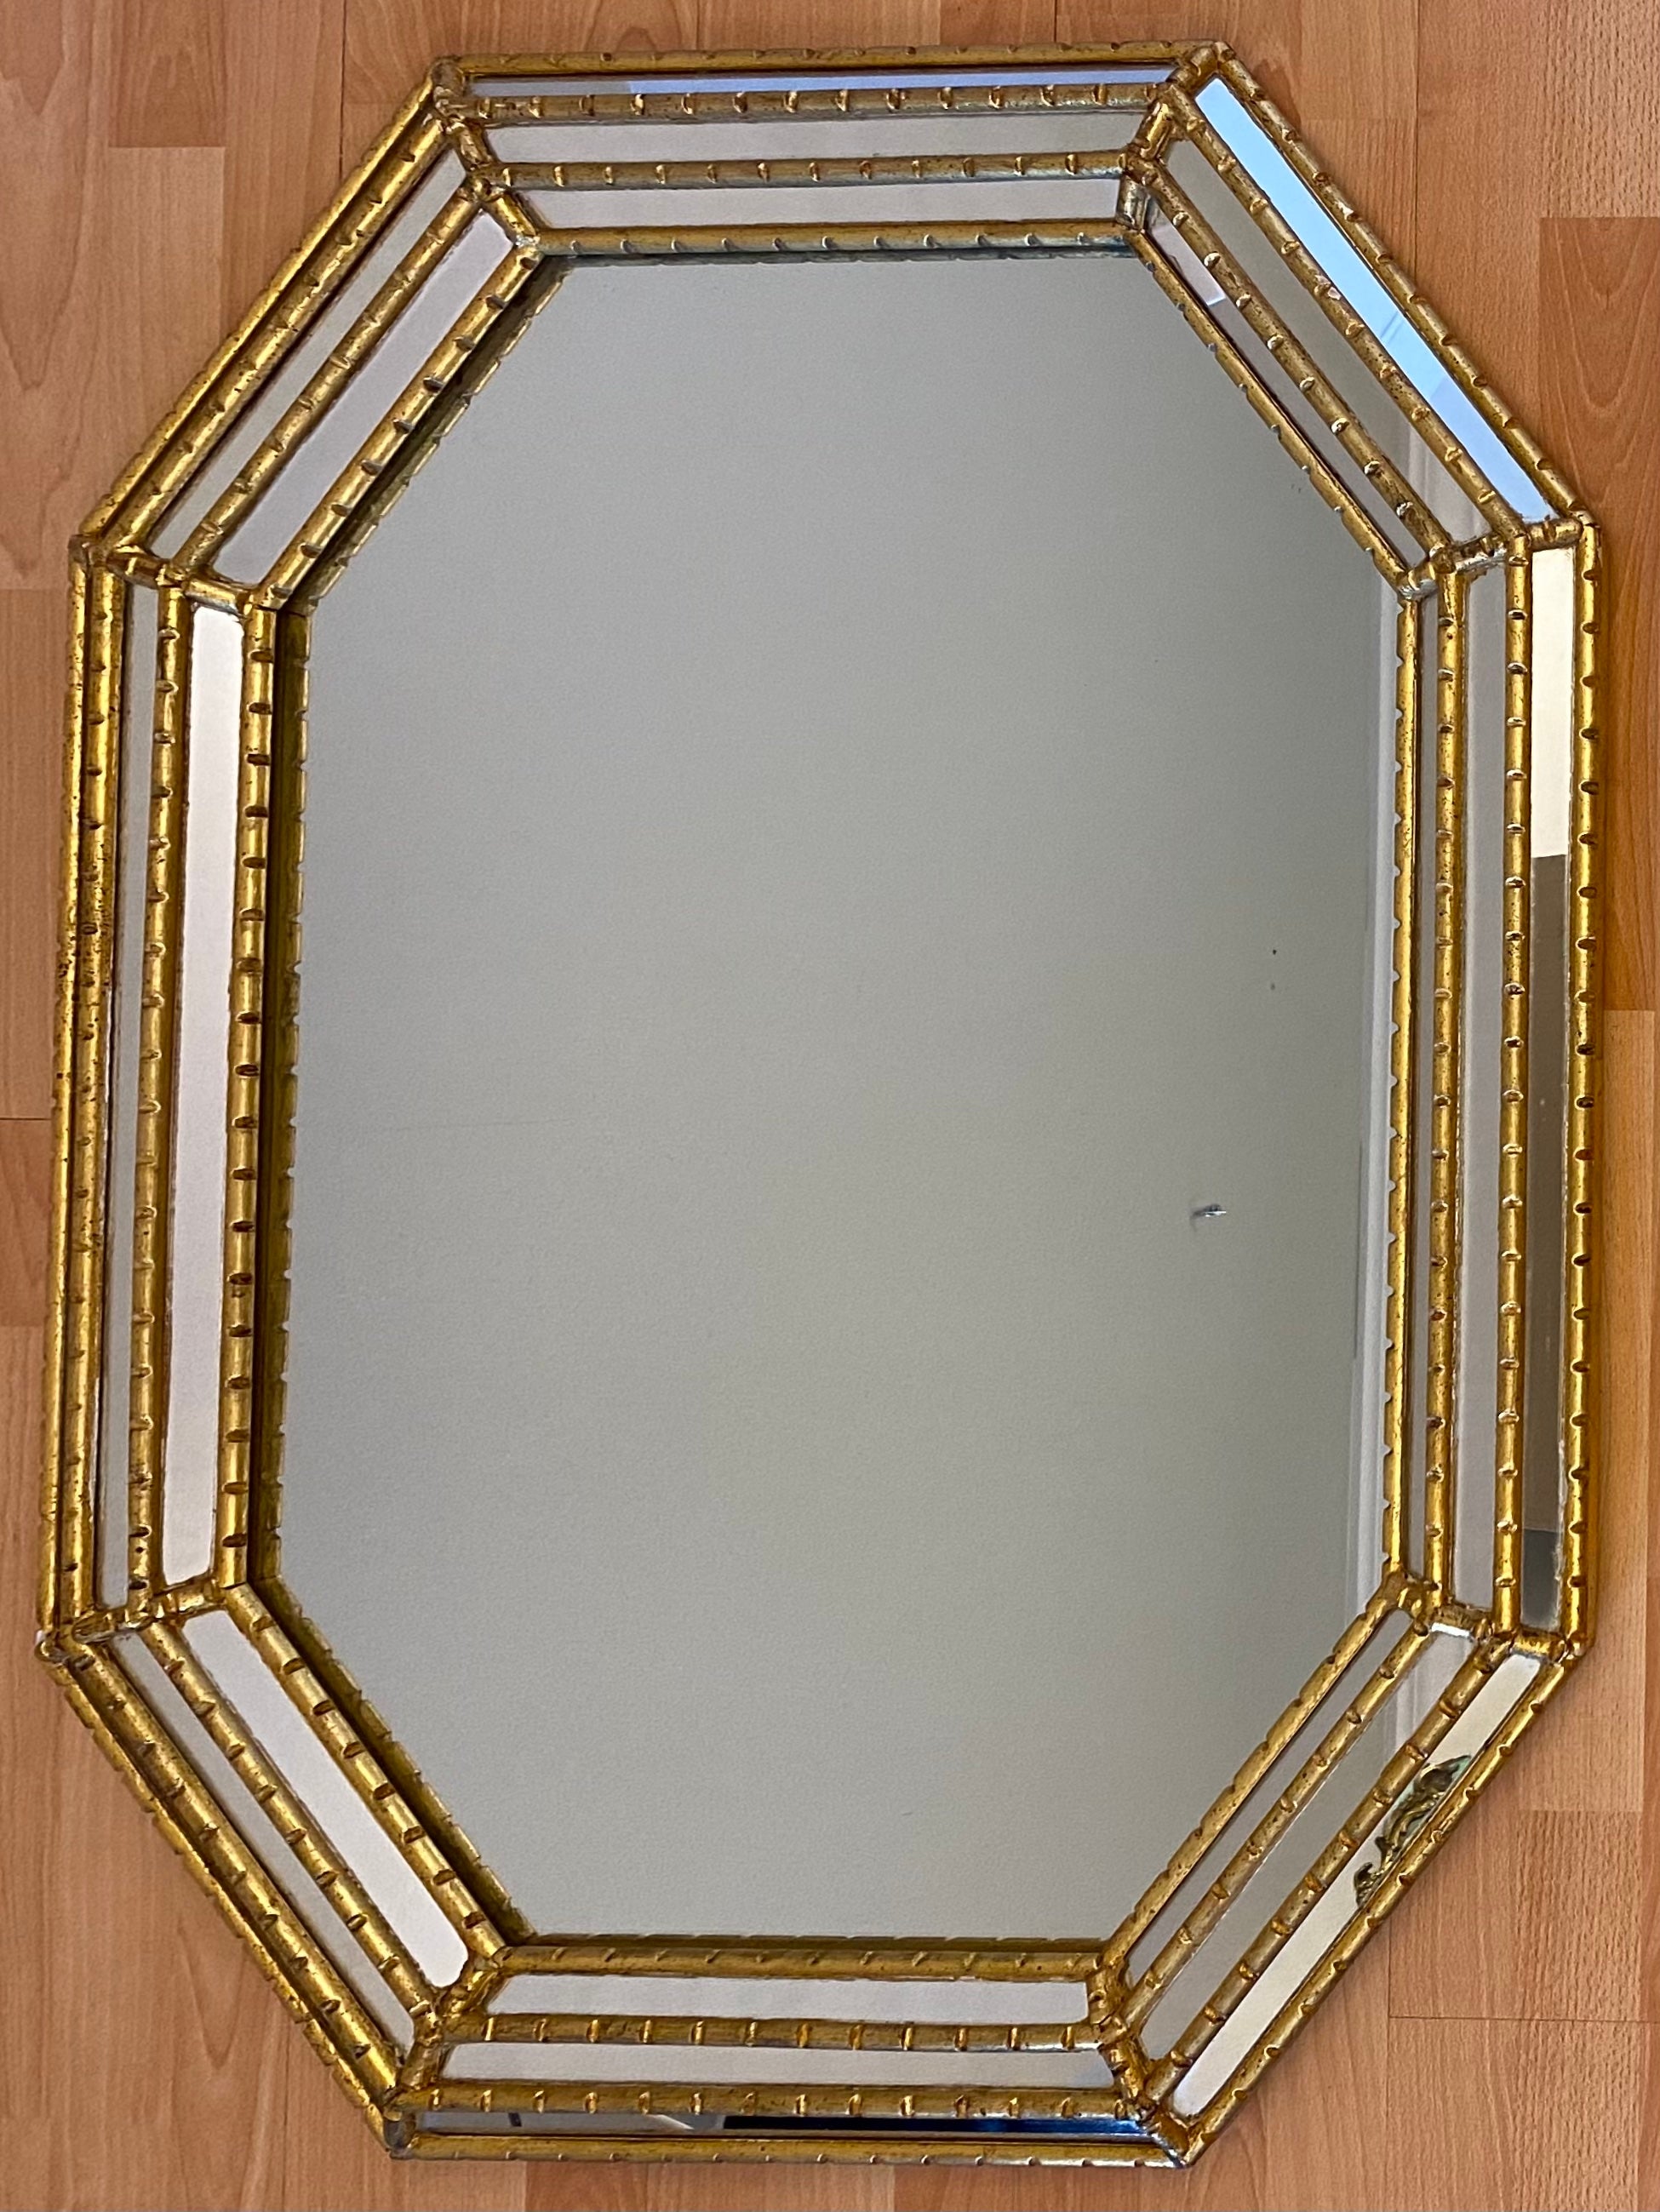 Miroir octogonal doré de belle qualité, avec des bords épais à triple biseau et un large cadre. Il s'agit d'une forme belle et intéressante, parfaite pour un couloir, une entrée au-dessus d'une console ou d'une coiffeuse.

Bois massif et pièce très